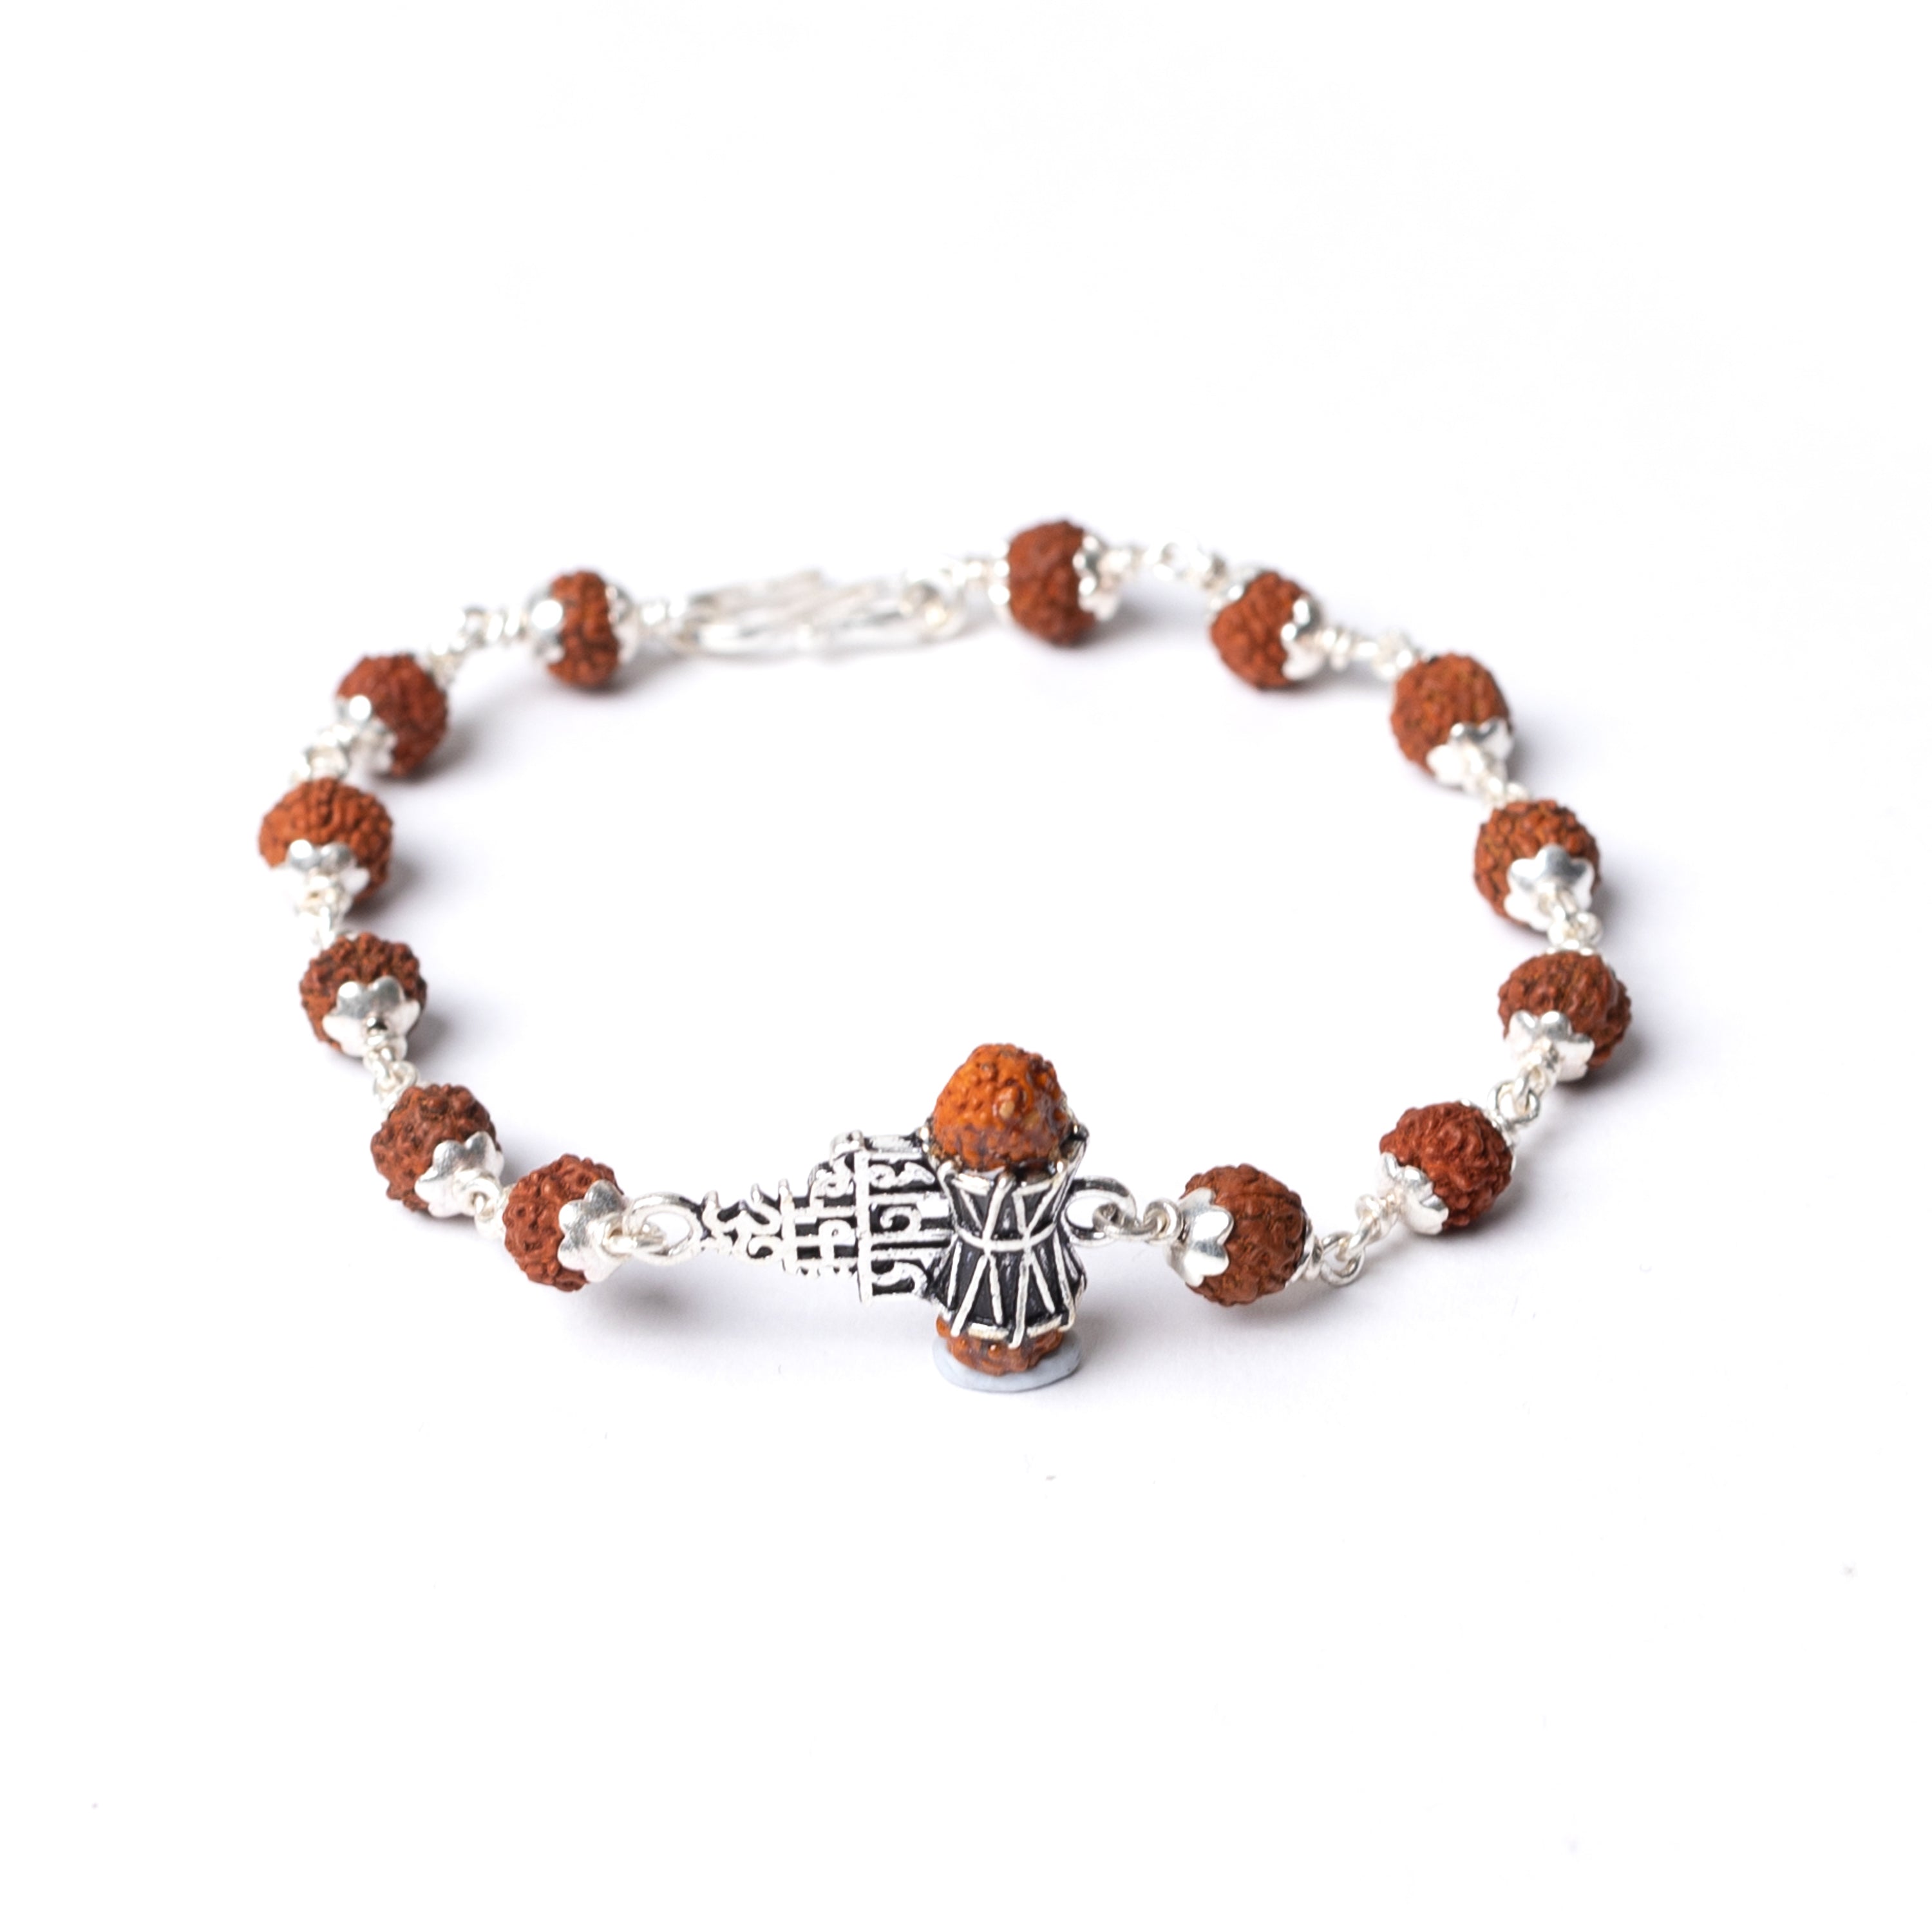 Shiva Om Namah Shivaya Mantra Bracelet Sanskrit Reversible 